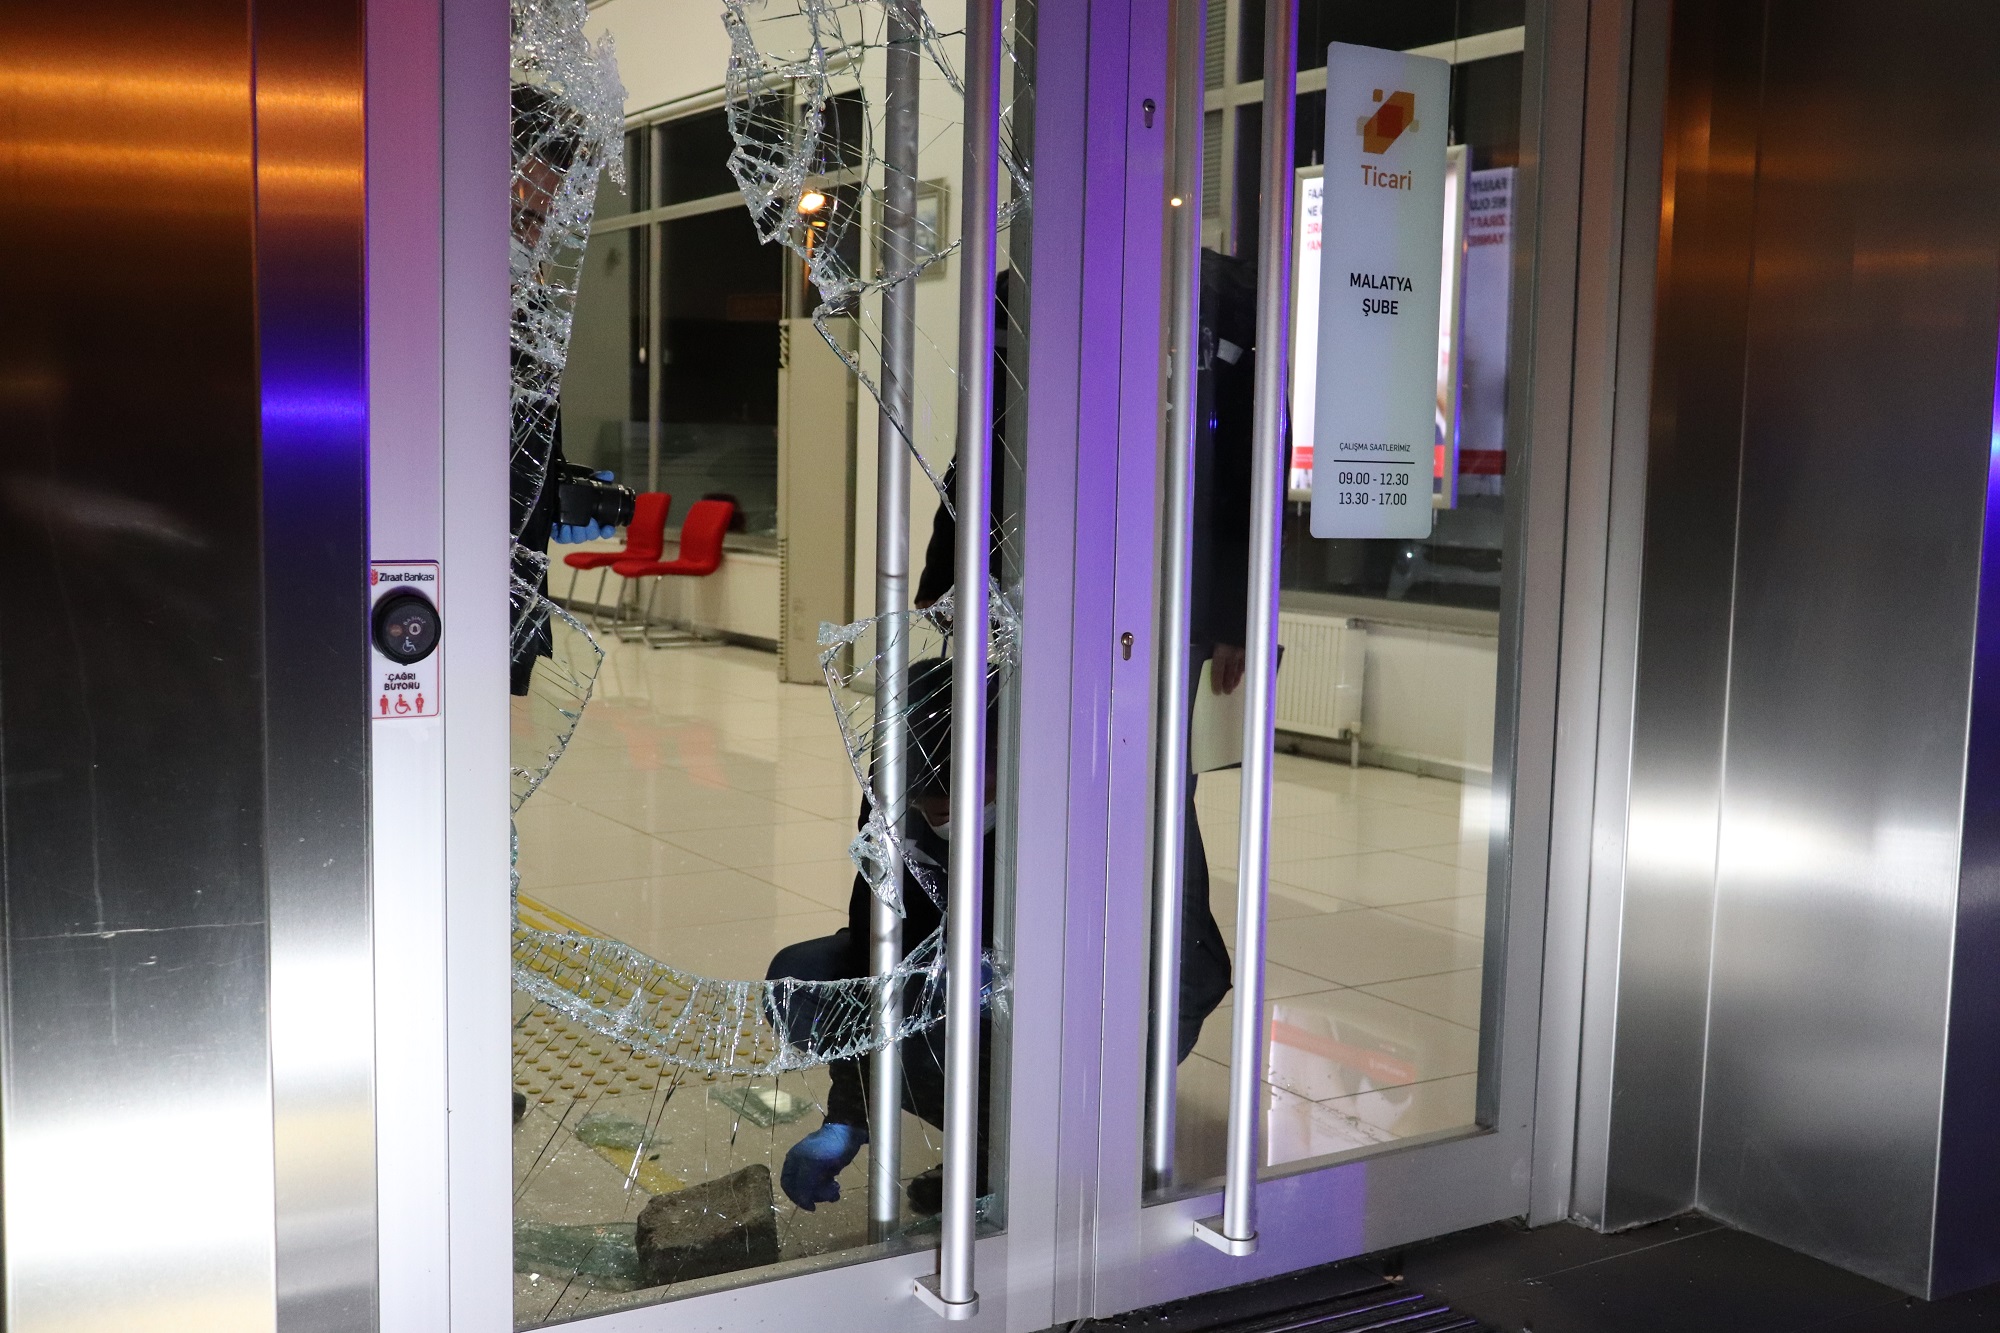 Malatya’da bir kişi, kaldırım taşı ile bir bankanın şubesinin giriş kapısının camlarını kırarak içeri girmek istedi, ancak çalan alarm üzerine bölgeye kısa sürede giren polis ekiplerince yakalanarak gözaltına alındı.